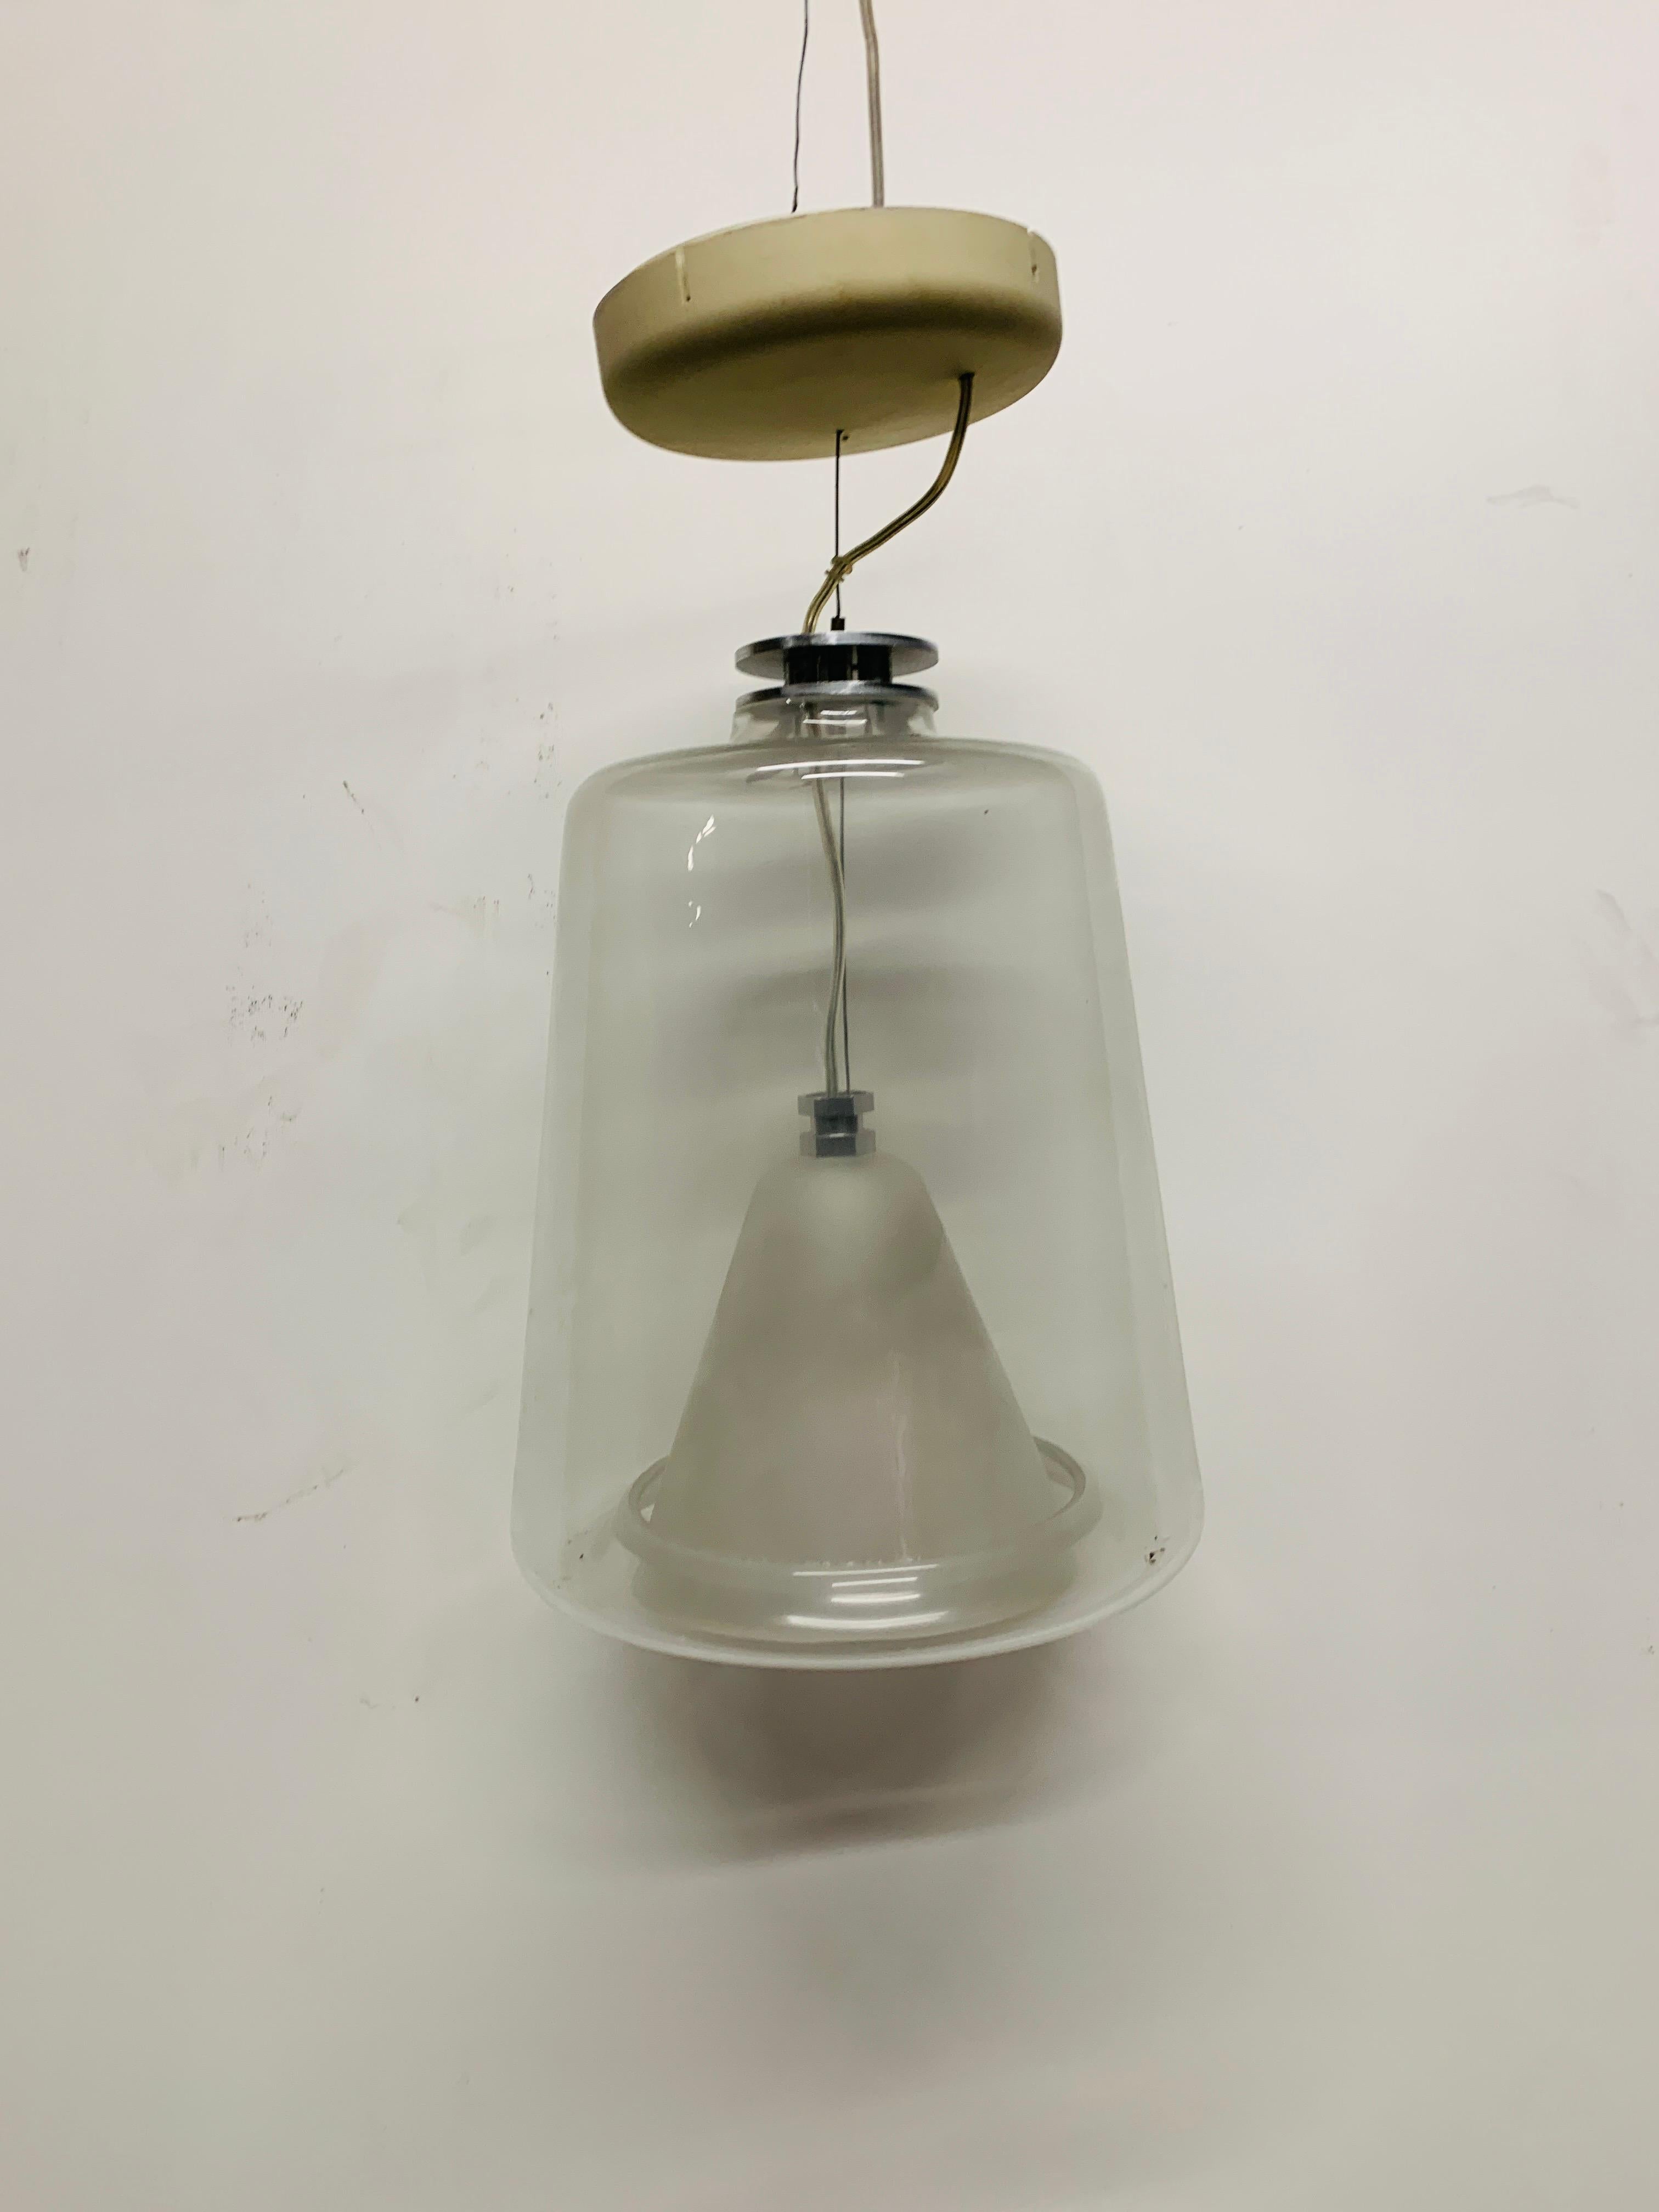 La Lanterna 477 d'Oluce est une lampe suspendue primée. Il date de 1998 et a été conçu par Laudani & Romanelli. Le corps de la Lanterna 477 est en verre transparent et sablé. C'est la plus grande lampe de cette collection. La version plus petite